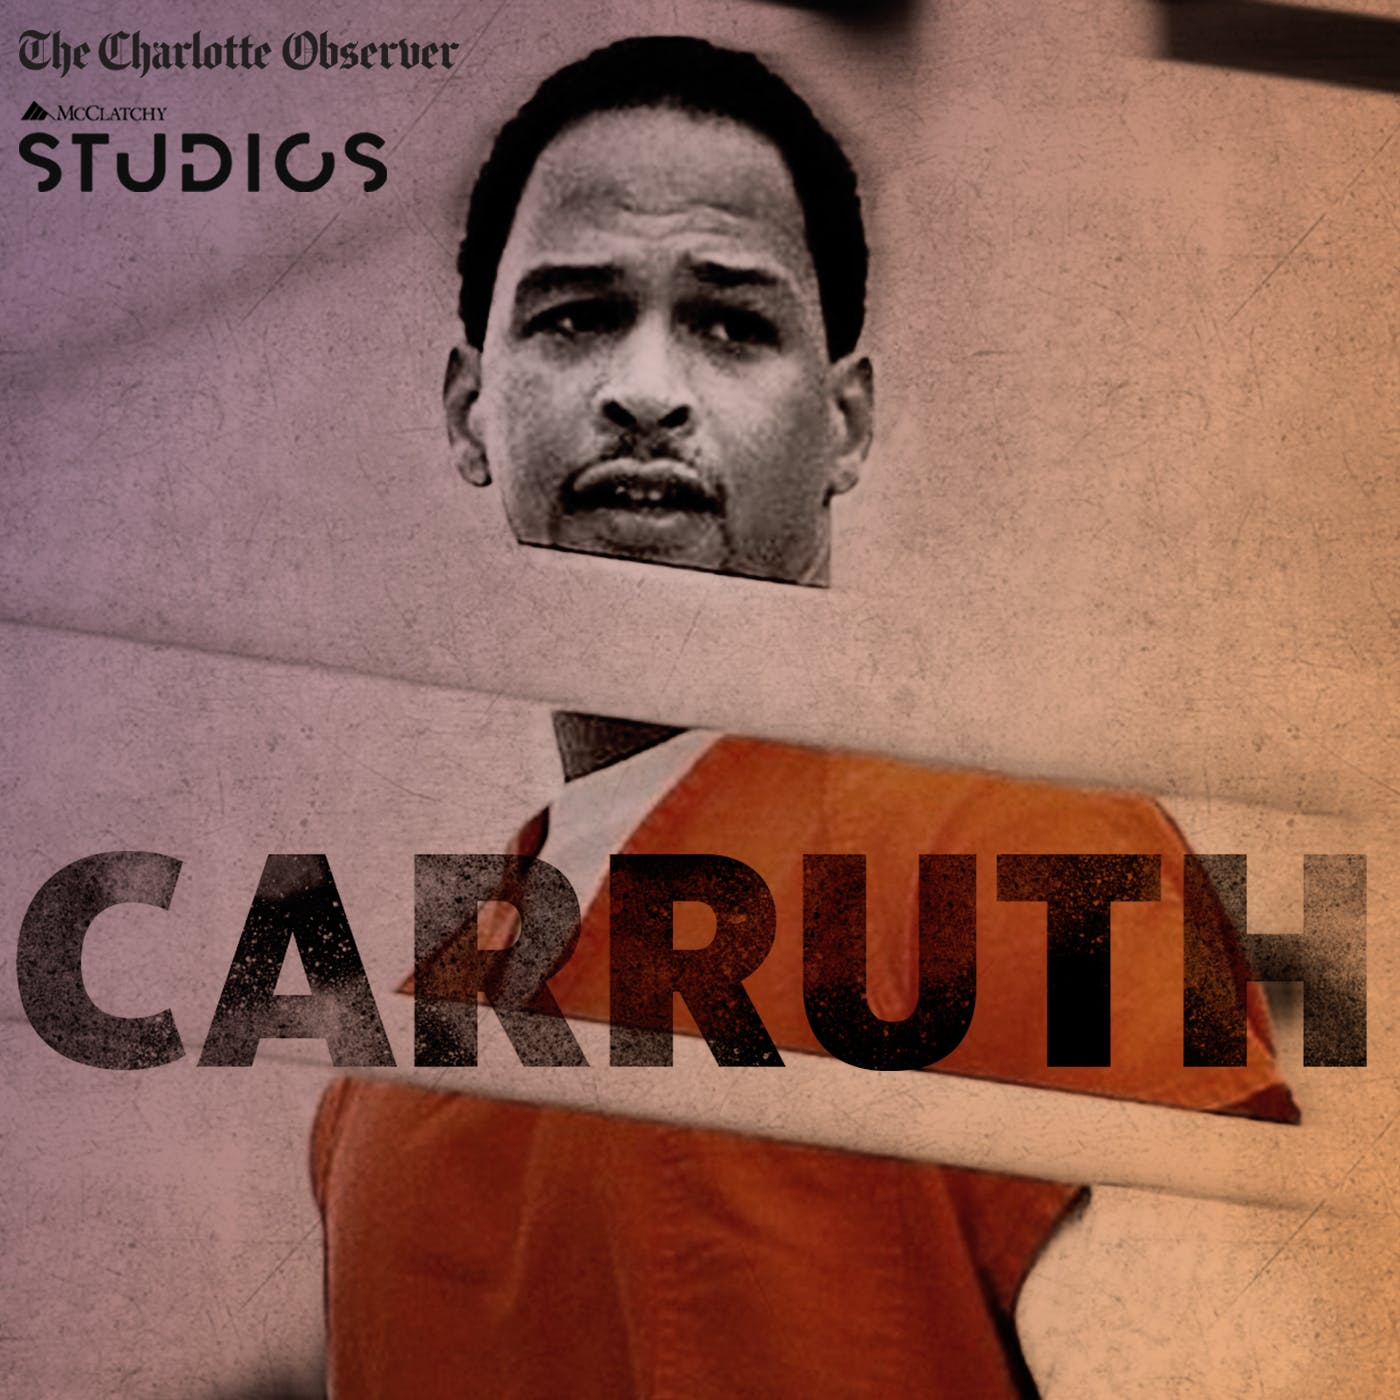 Introducing Carruth